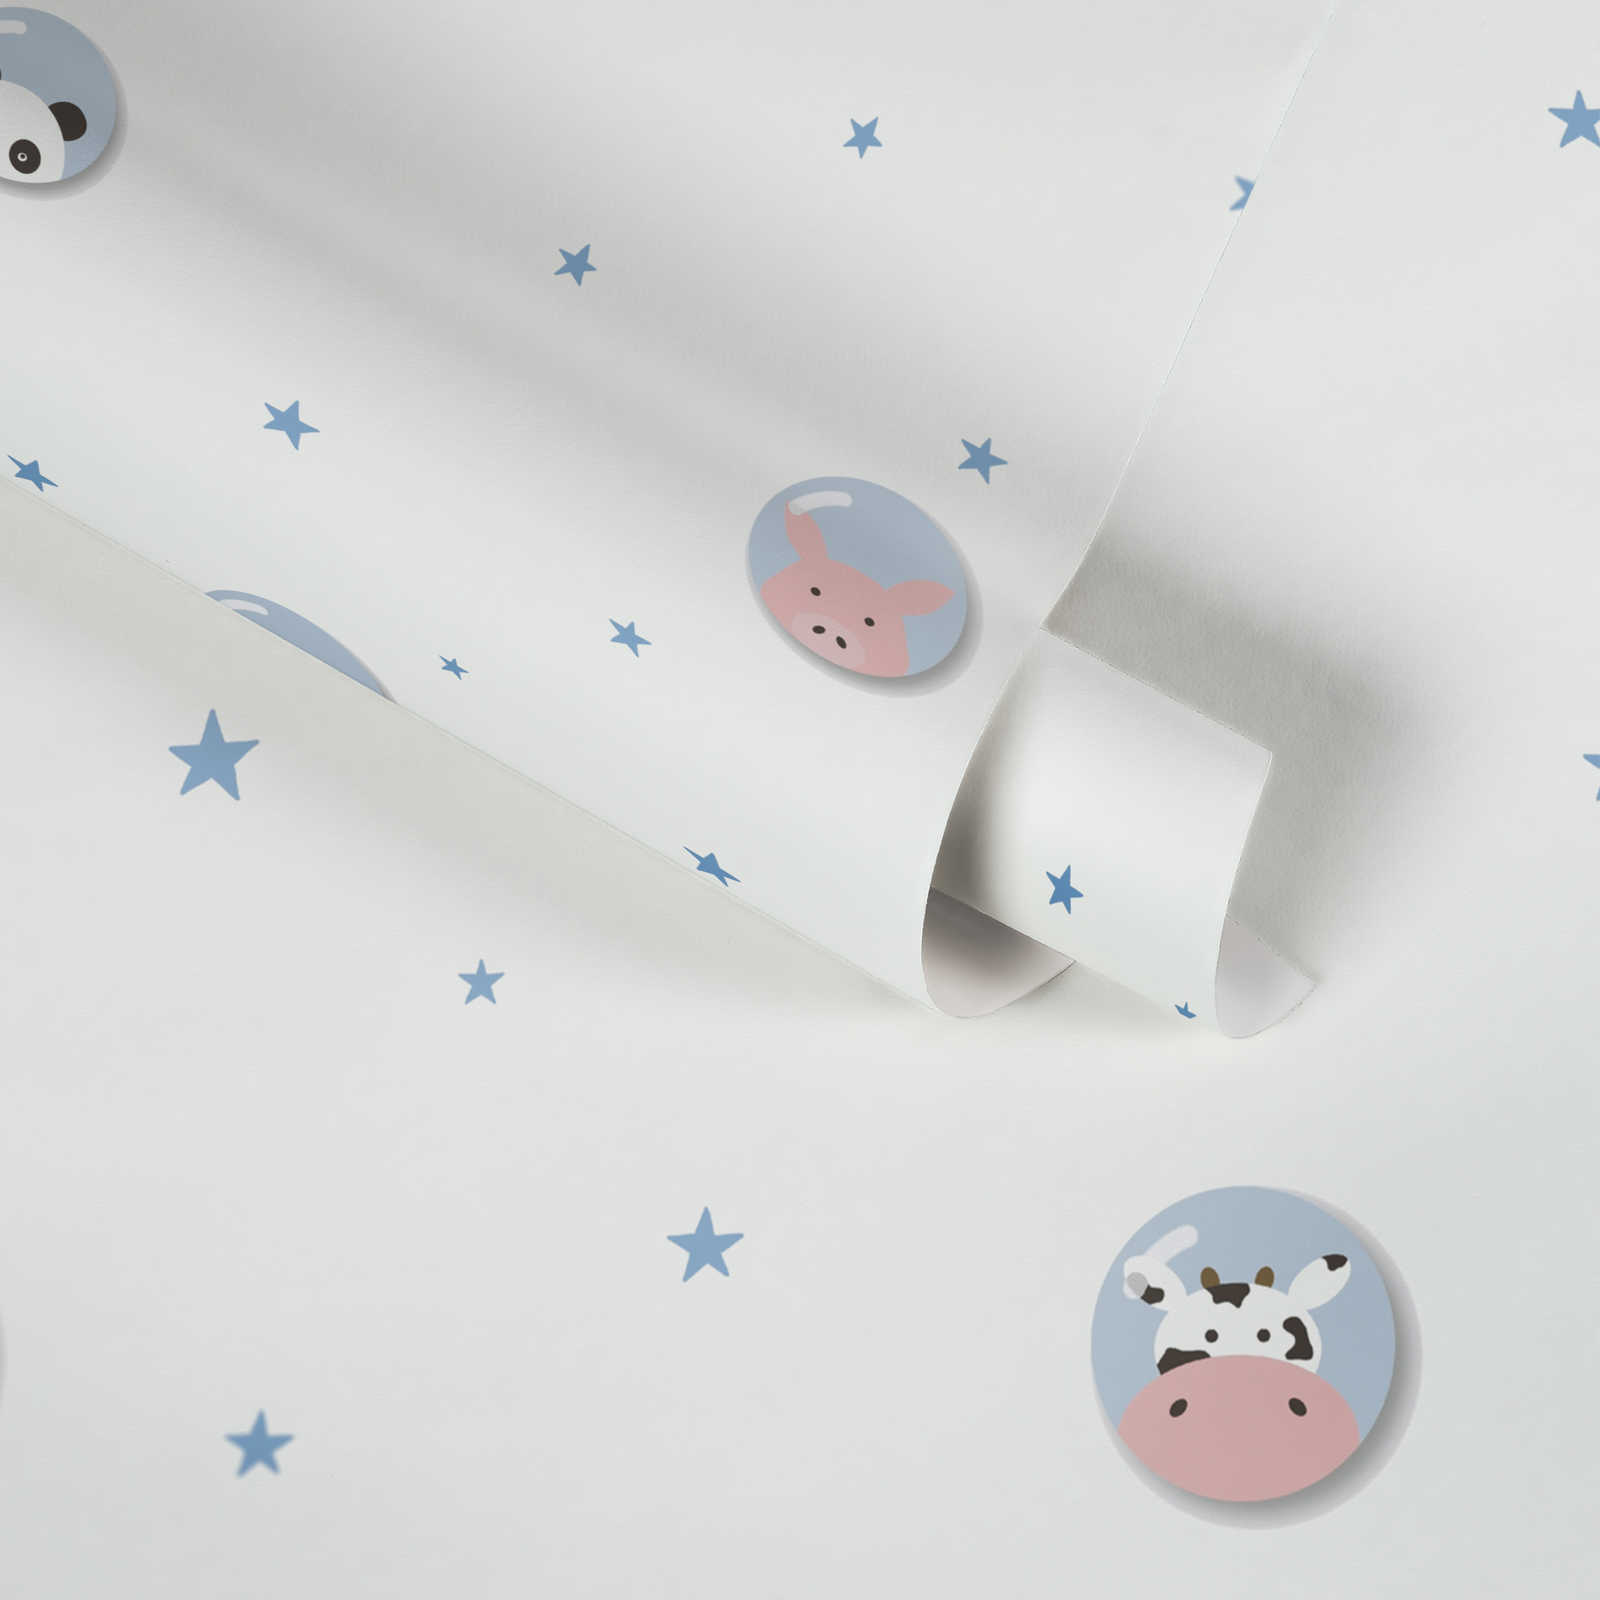             Papier peint chambre enfants animaux & étoiles - bleu, blanc, rose
        